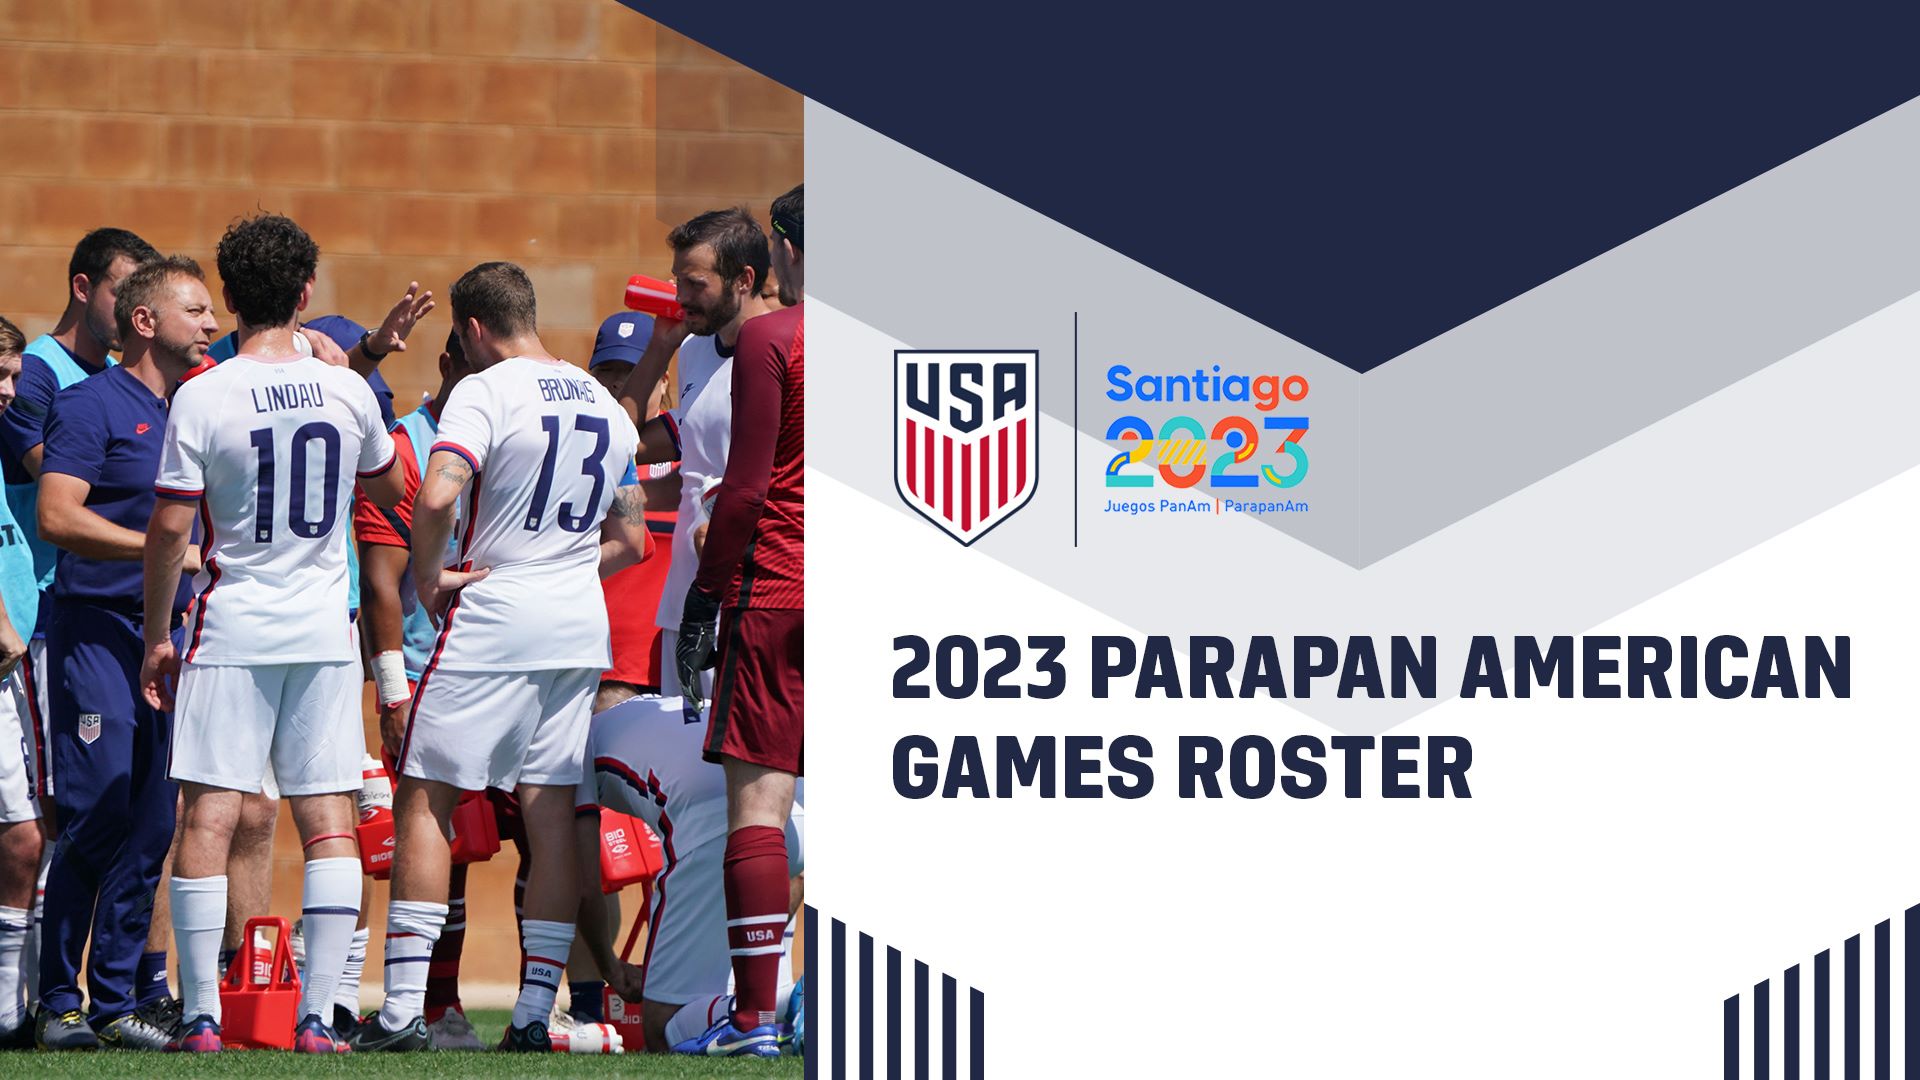 Stuart Sharp, entrenador en jefe de la Selección Nacional Masculina CP de EE. UU., convoca a 14 jugadores para representar a Estados Unidos en los Juegos Parapanamericanos 2023